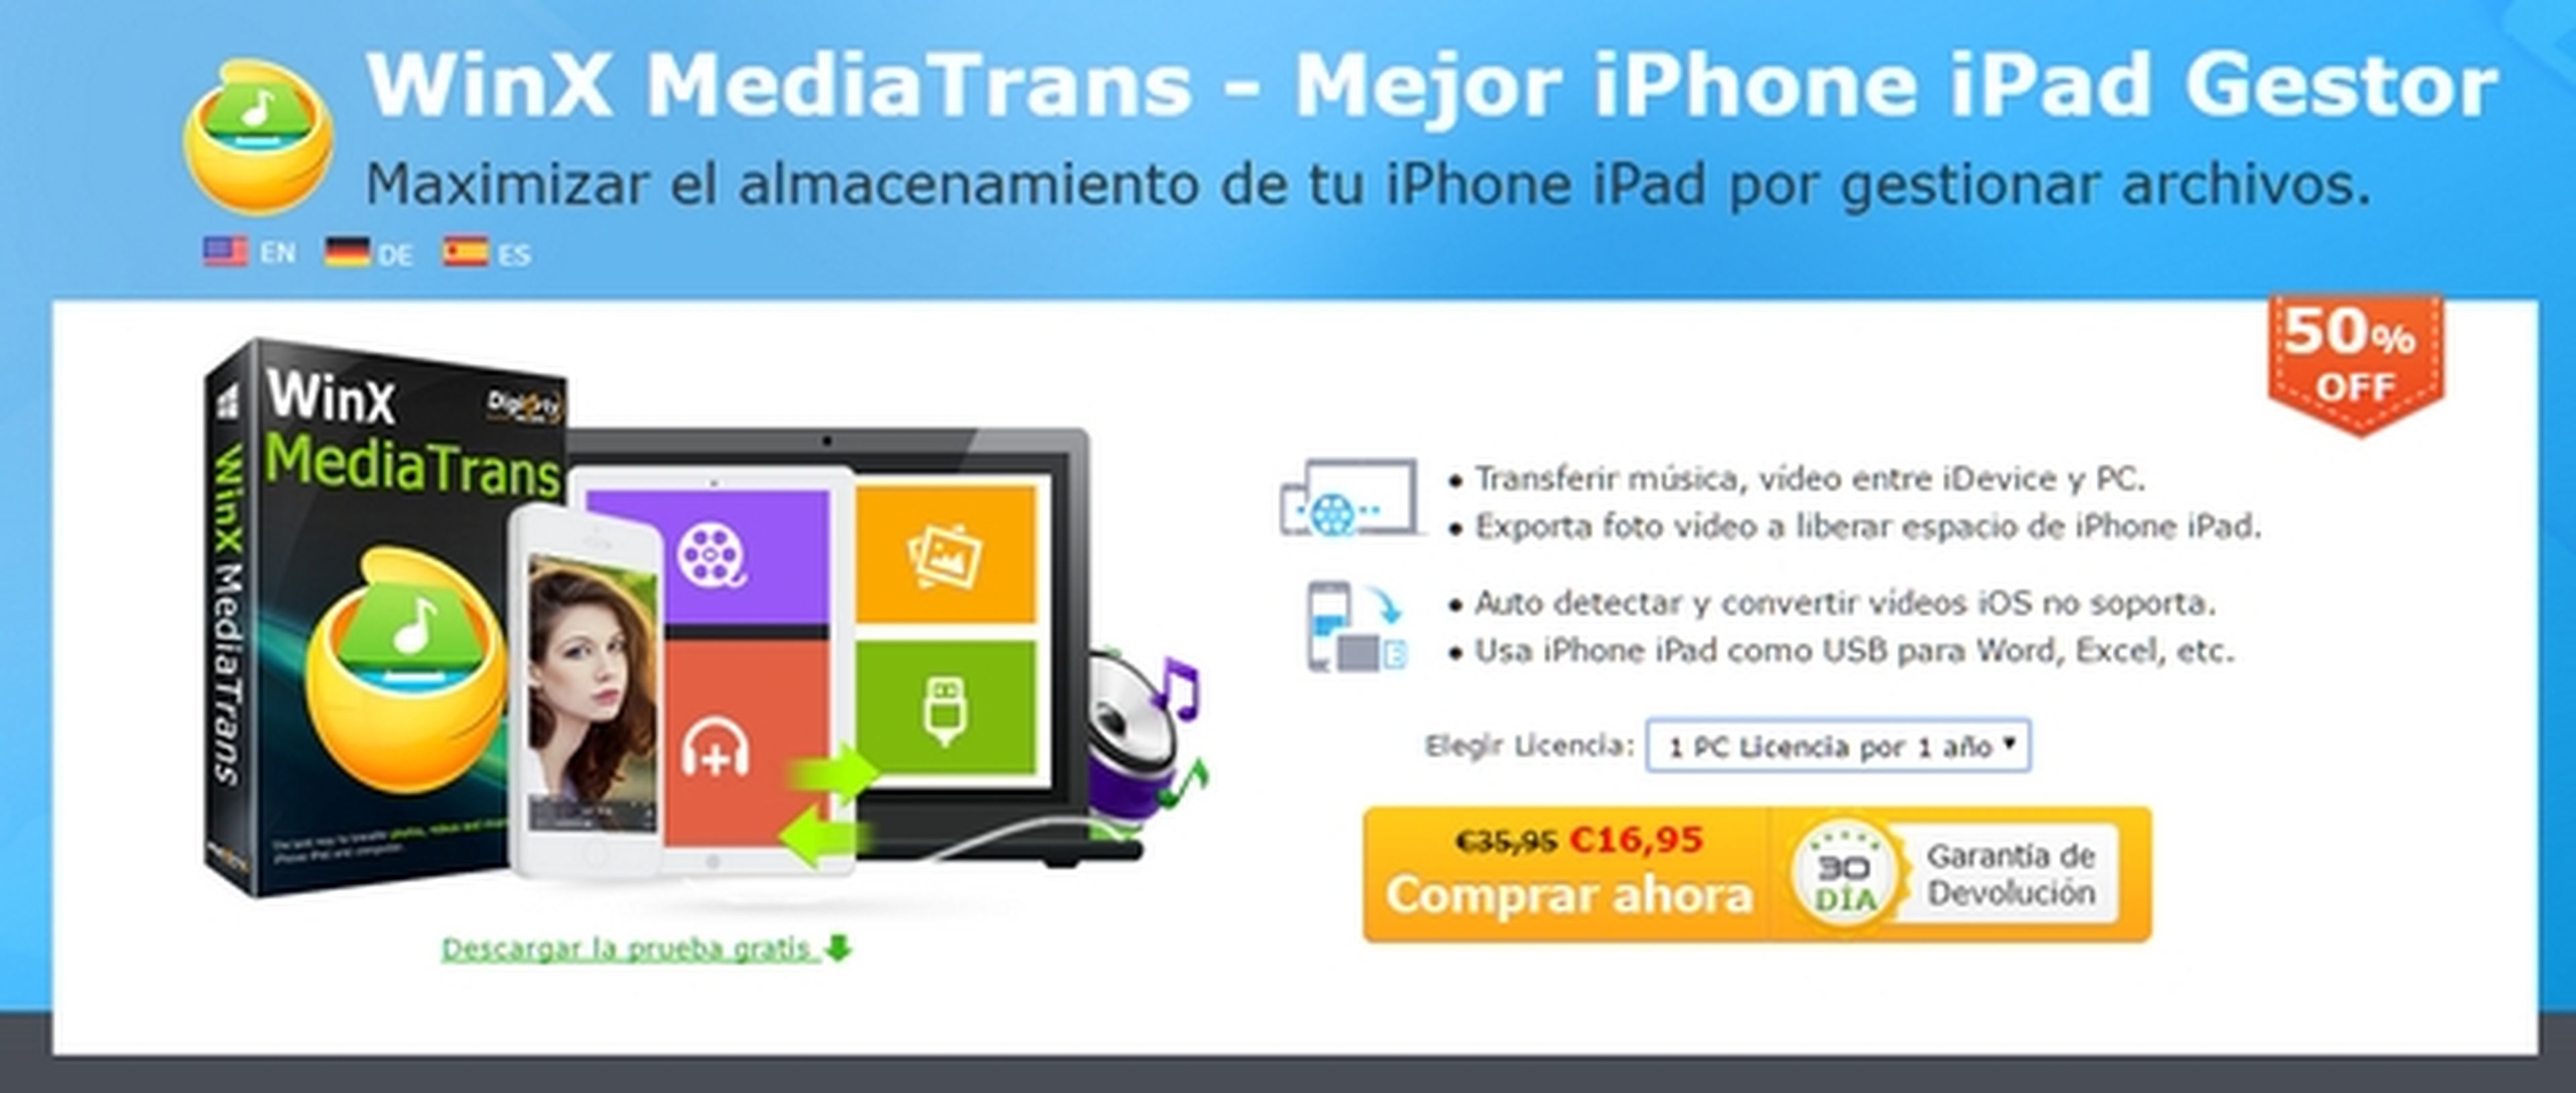 La mejor herramienta para administrar tu iPhone y iPad, WinX MediaTrans